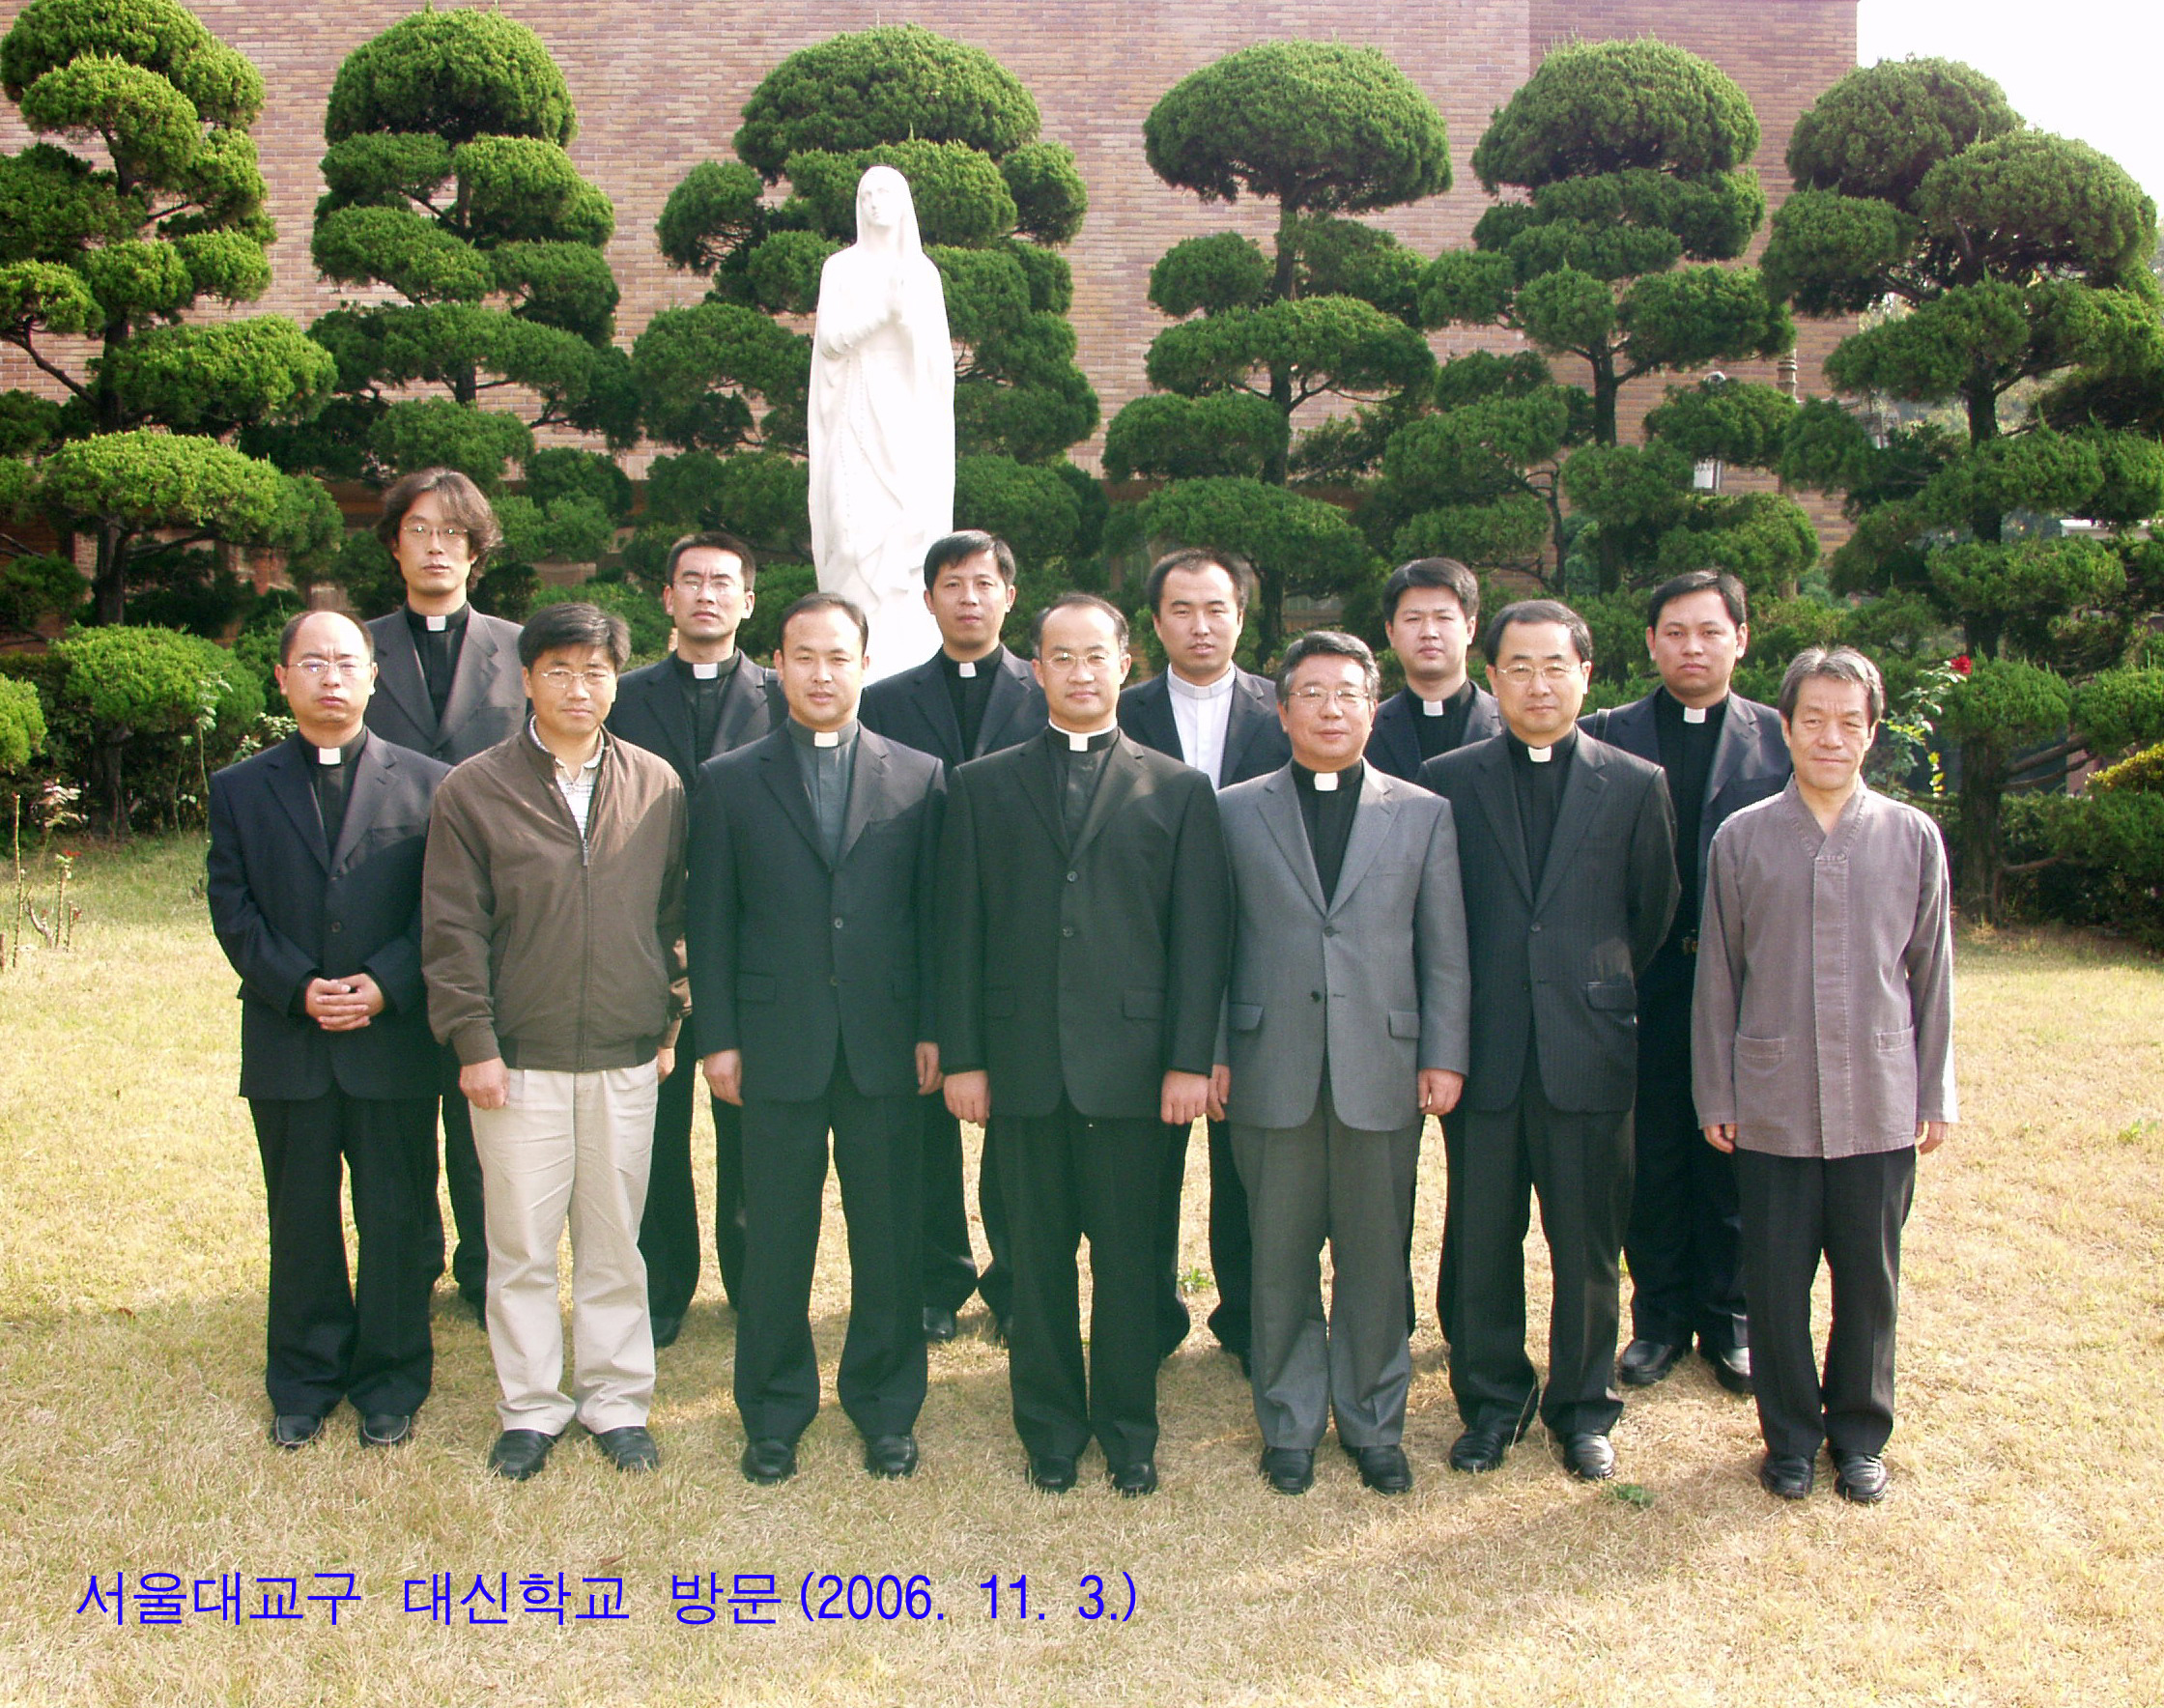 중국 심양신학교 사제단 10명 방문(2006.11.3)의 관련된 이미지 입니다.